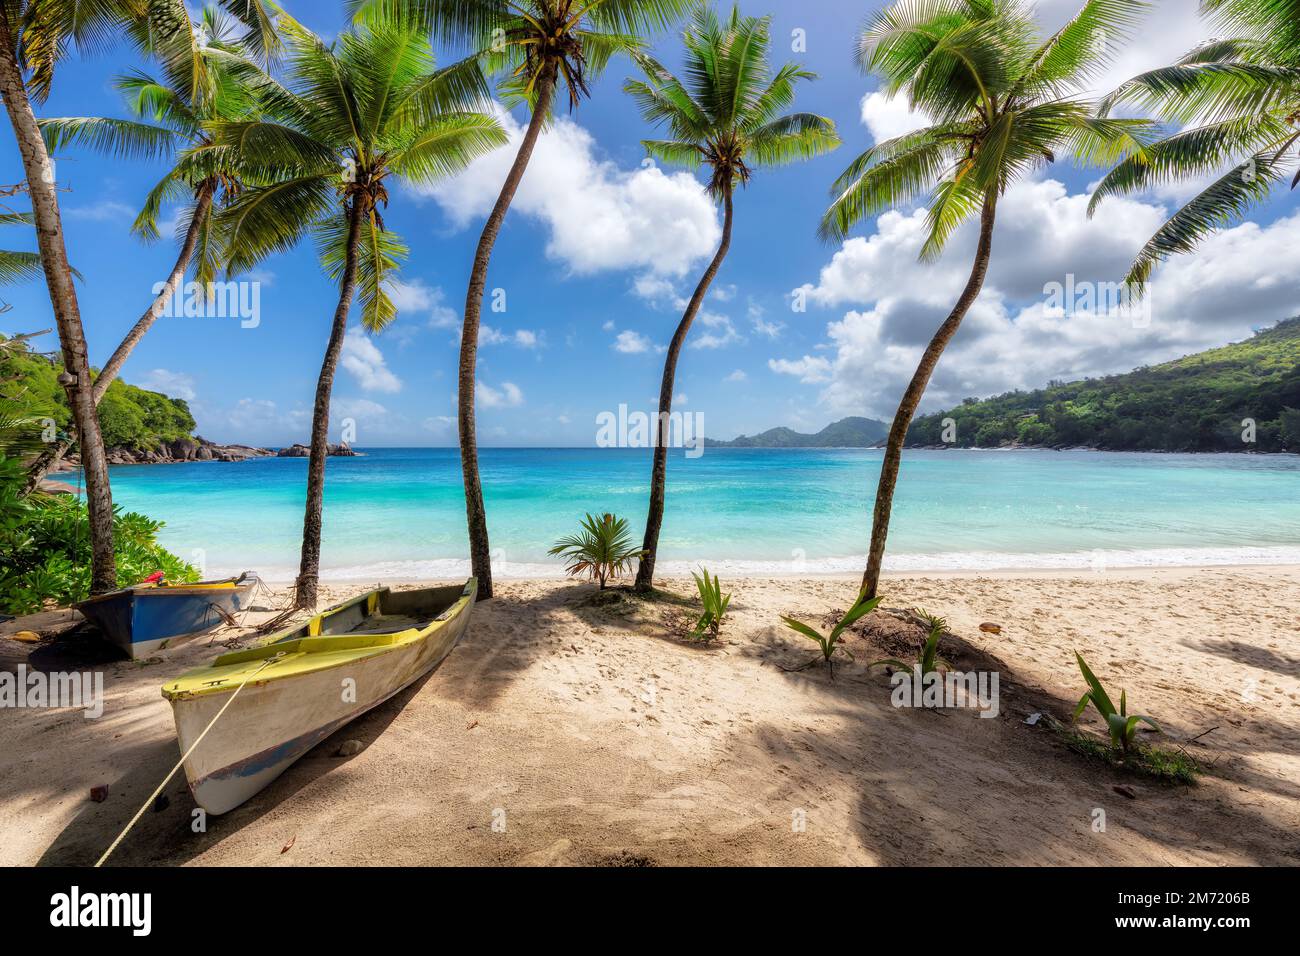 Des palmiers Coco et des bateaux de pêche sur une plage de sable de l'île Paradise. Banque D'Images